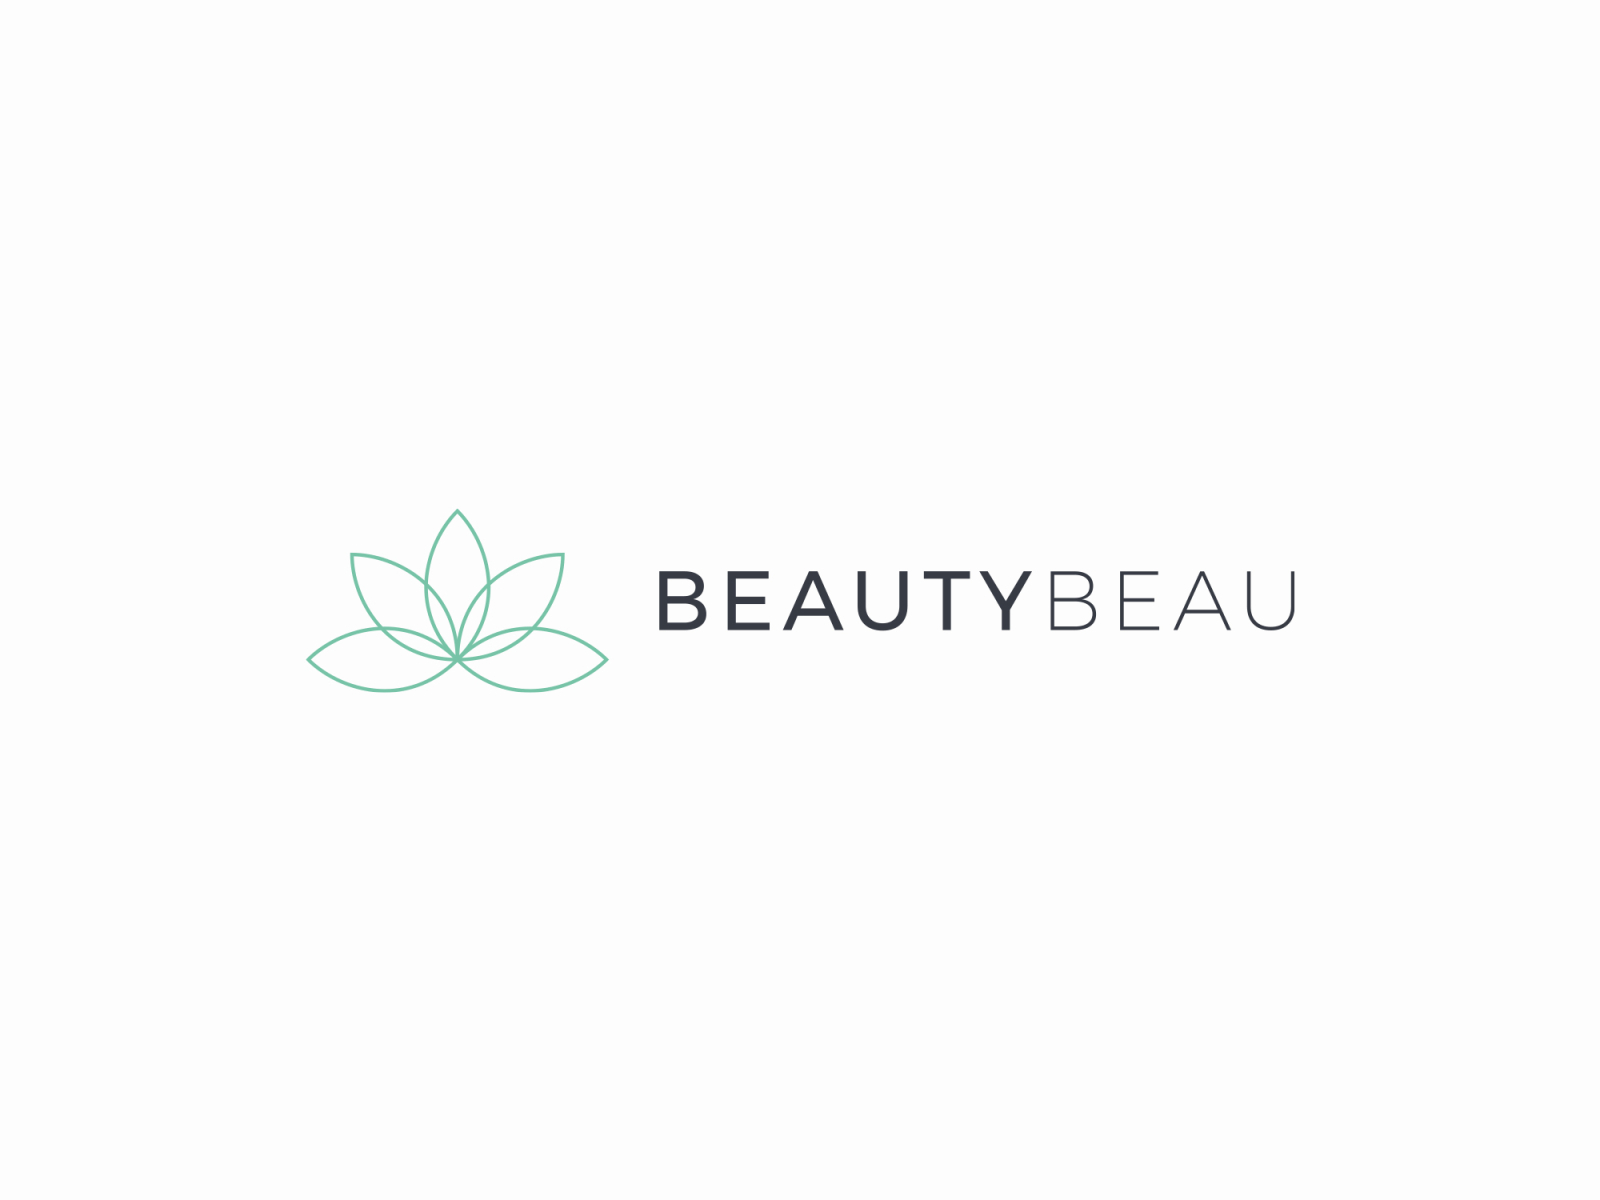 BeautyBeau - logo by Krzysztof Cichocki on Dribbble